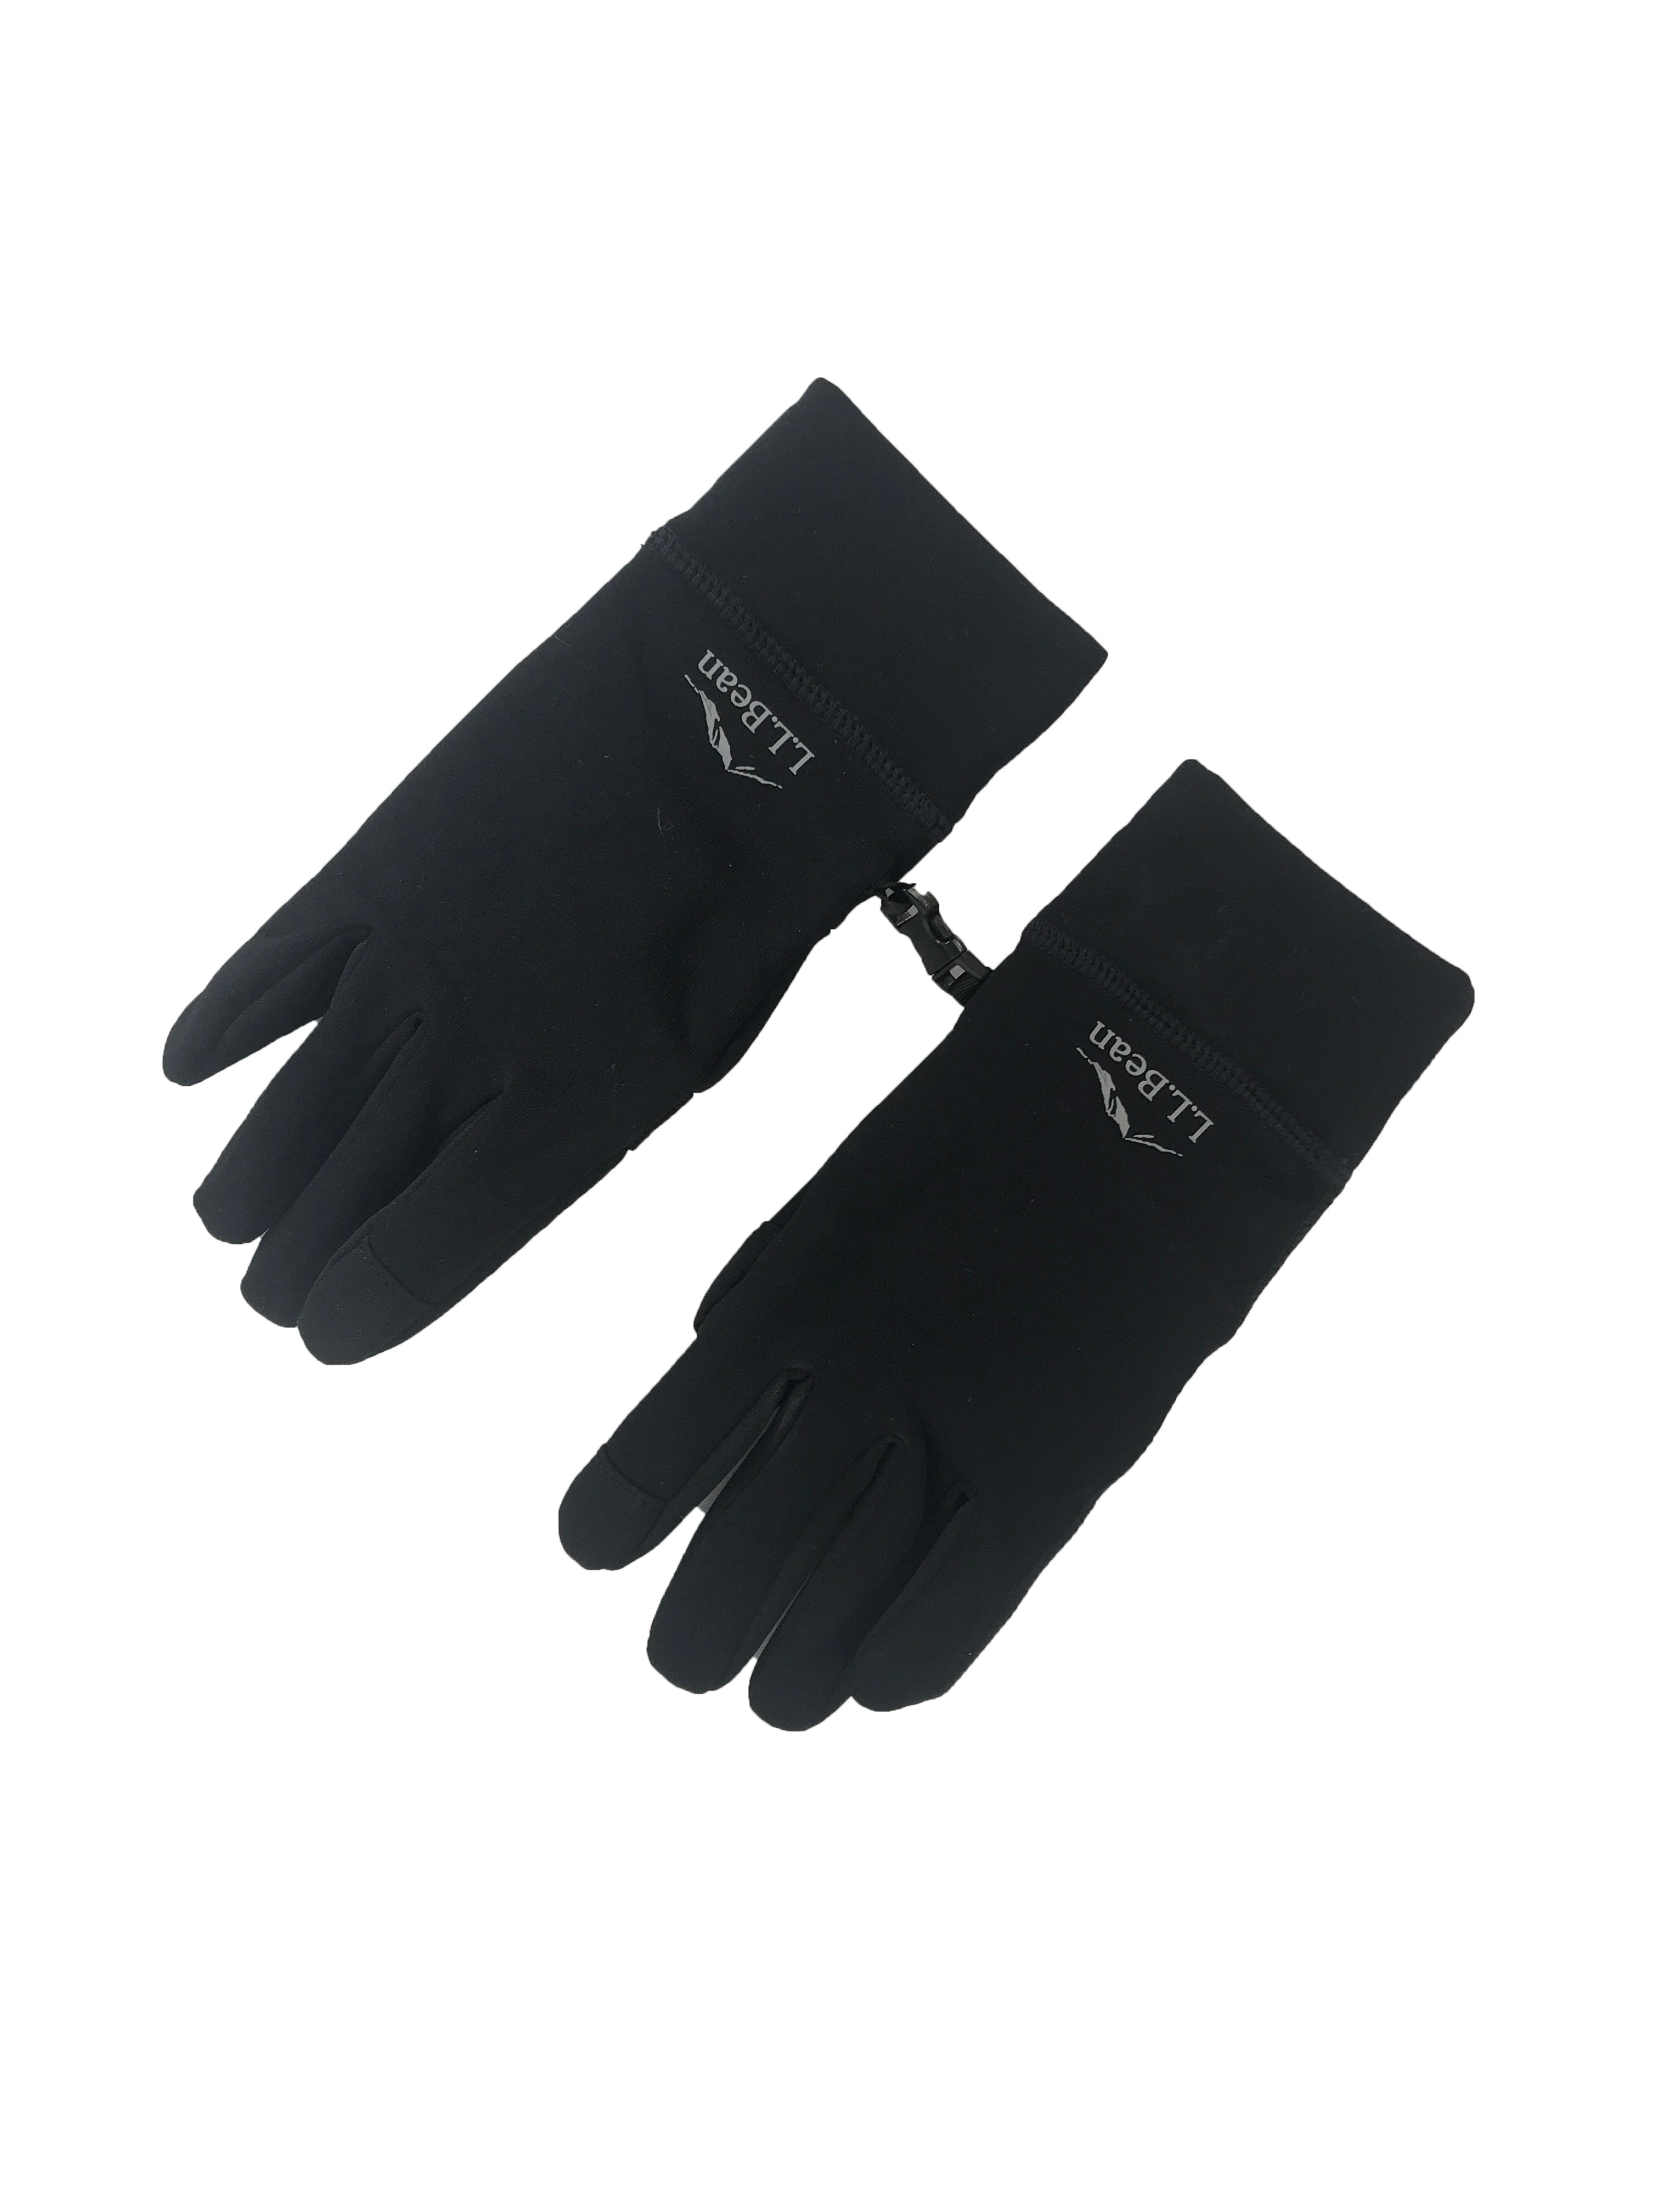 L.L. Bean Black Gloves Unisex Size M